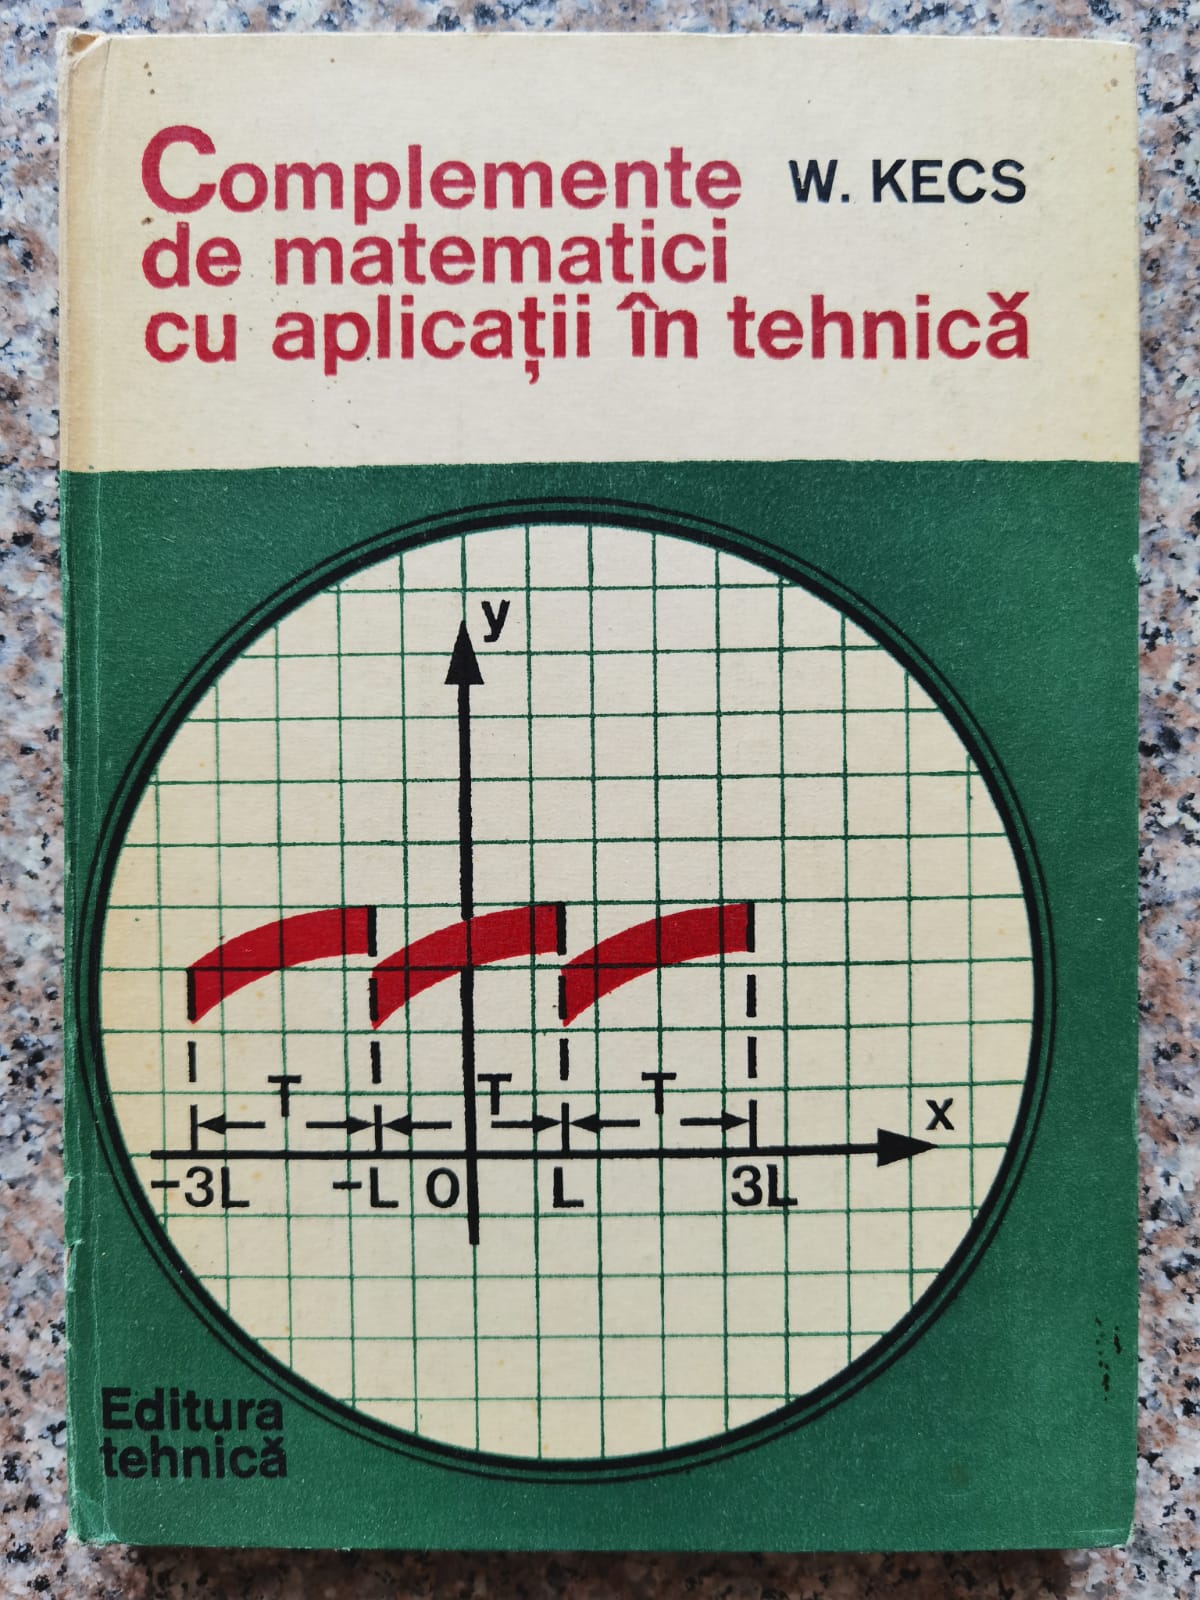 complemente de matematici cu aplicatii in tehnica                                                    w. kecs                                                                                             